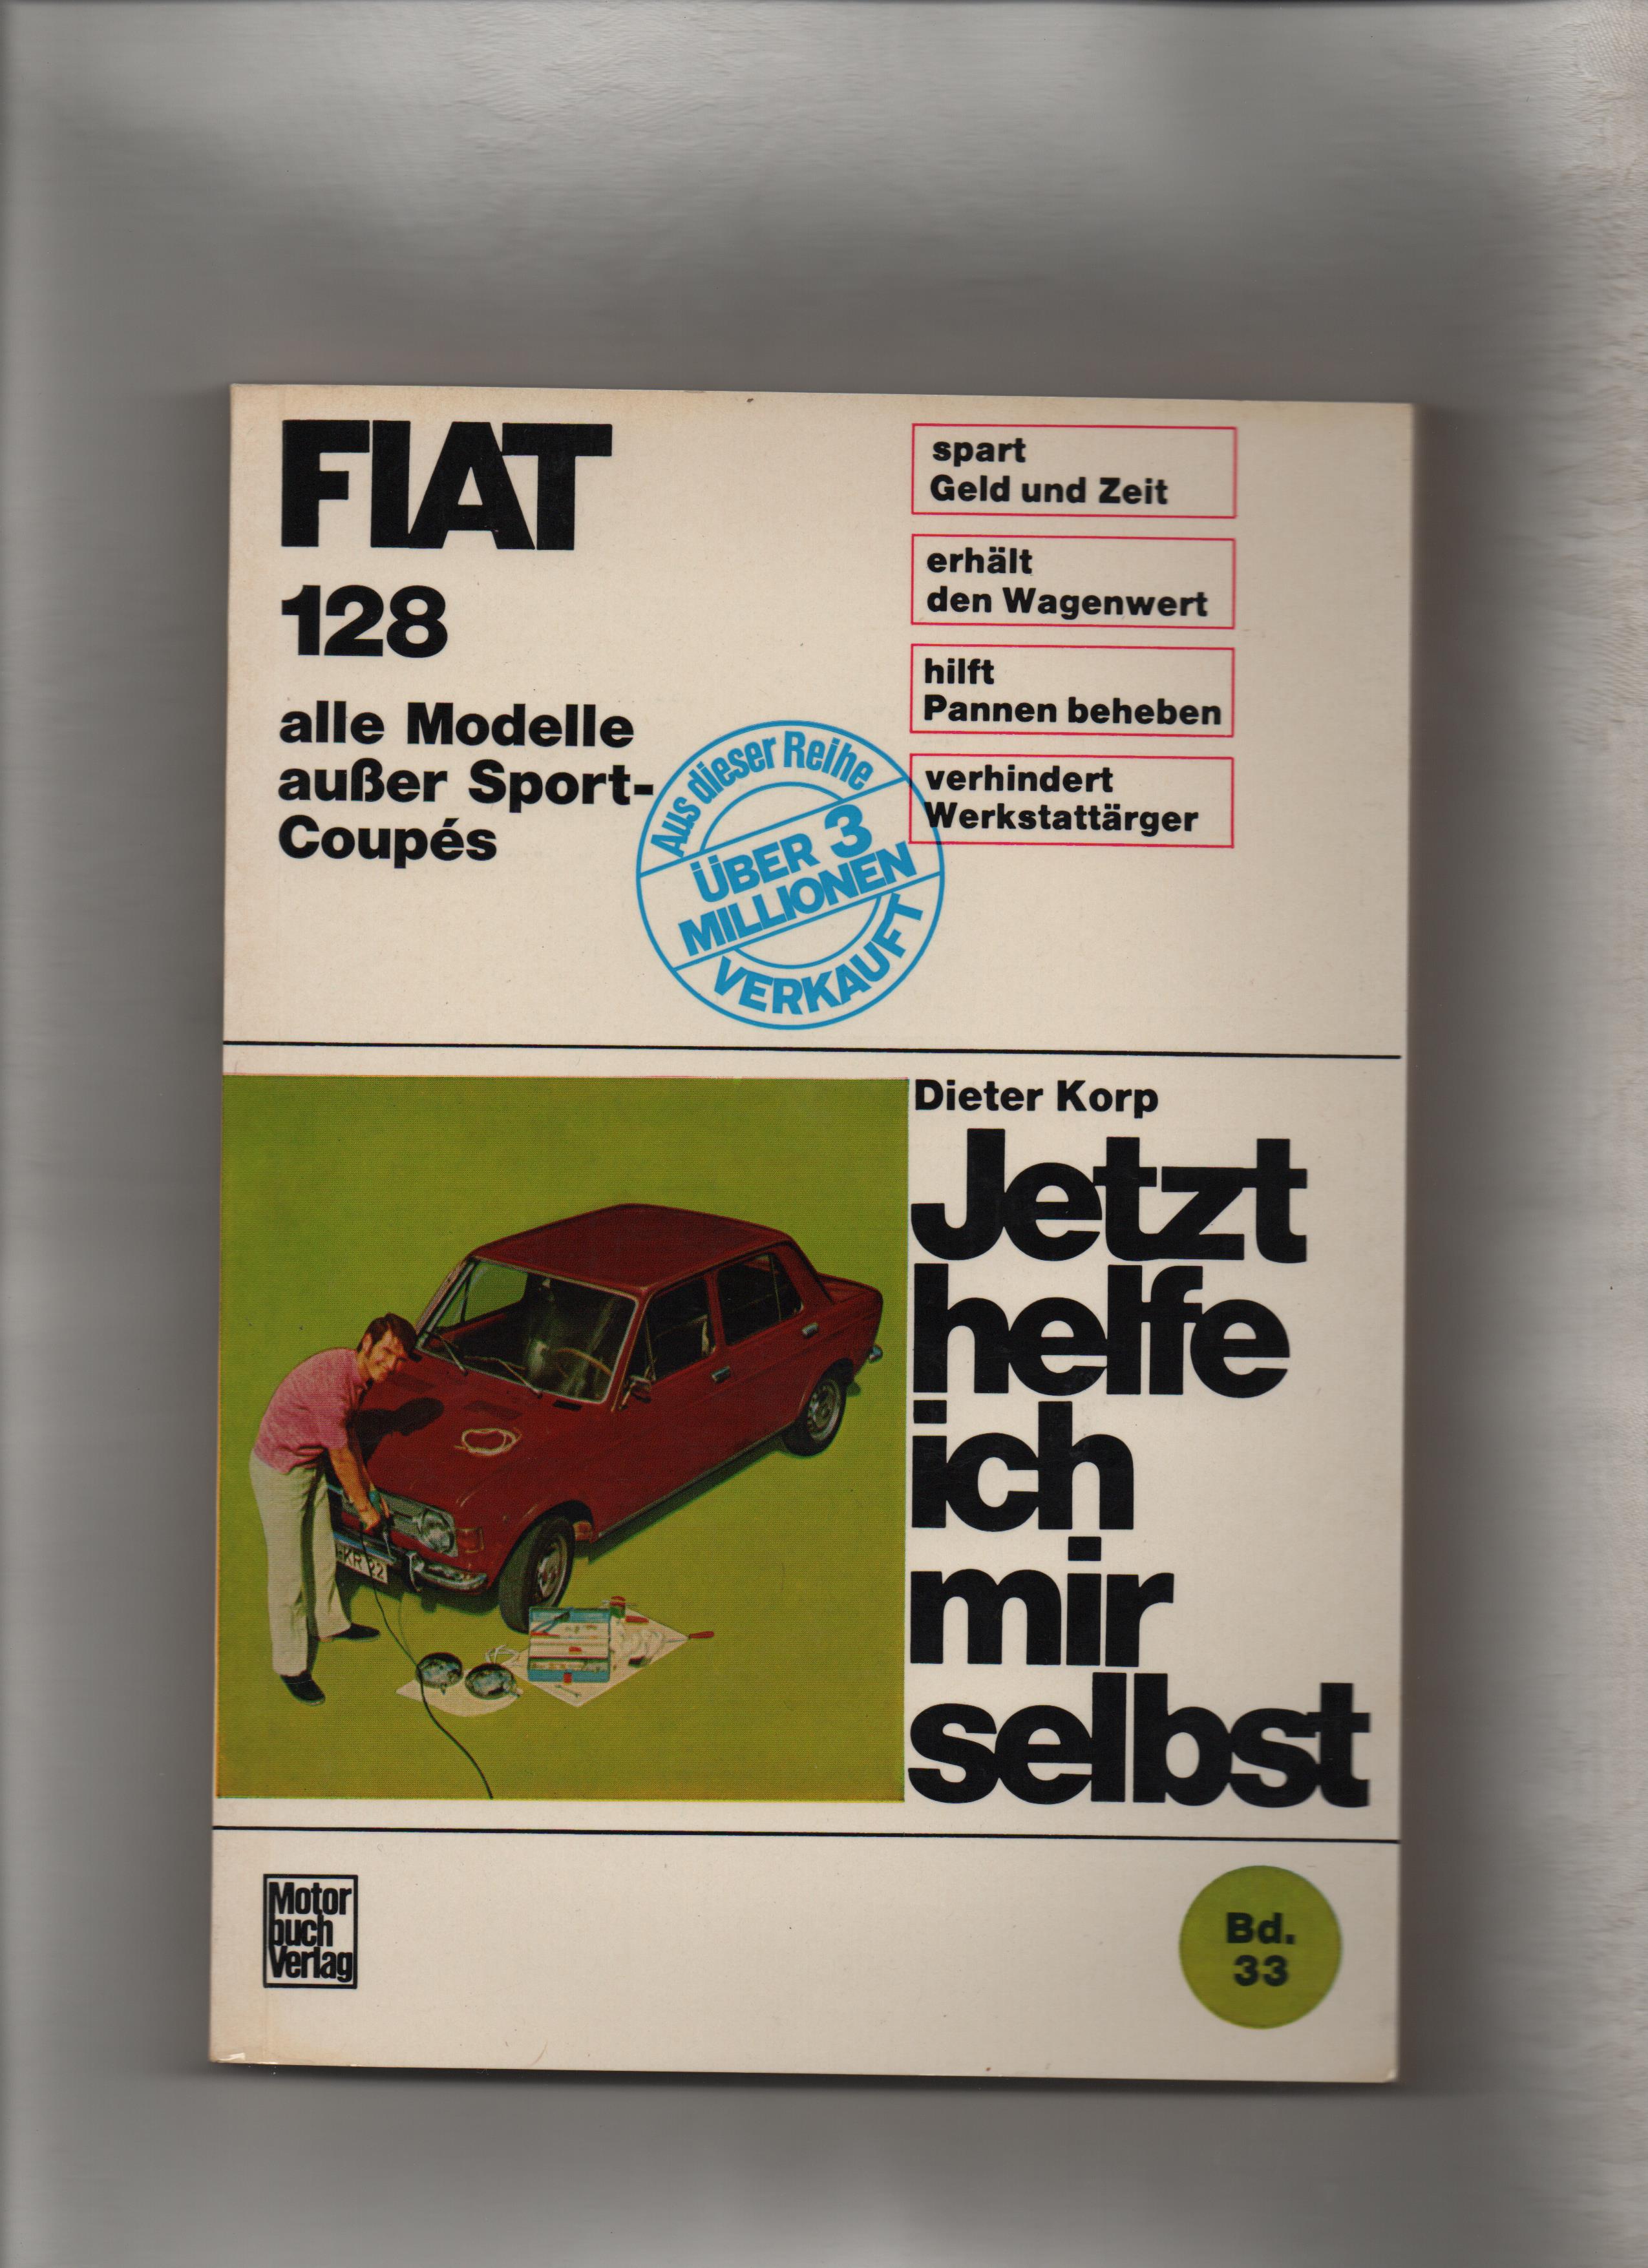 Jetzt helfe ich mir selbst; Bd. 33, Fiat 128, alle Modelle außer Sport-Coupés Dieter Korp. Unter Mitarb. von Wolfgang Schmarbeck